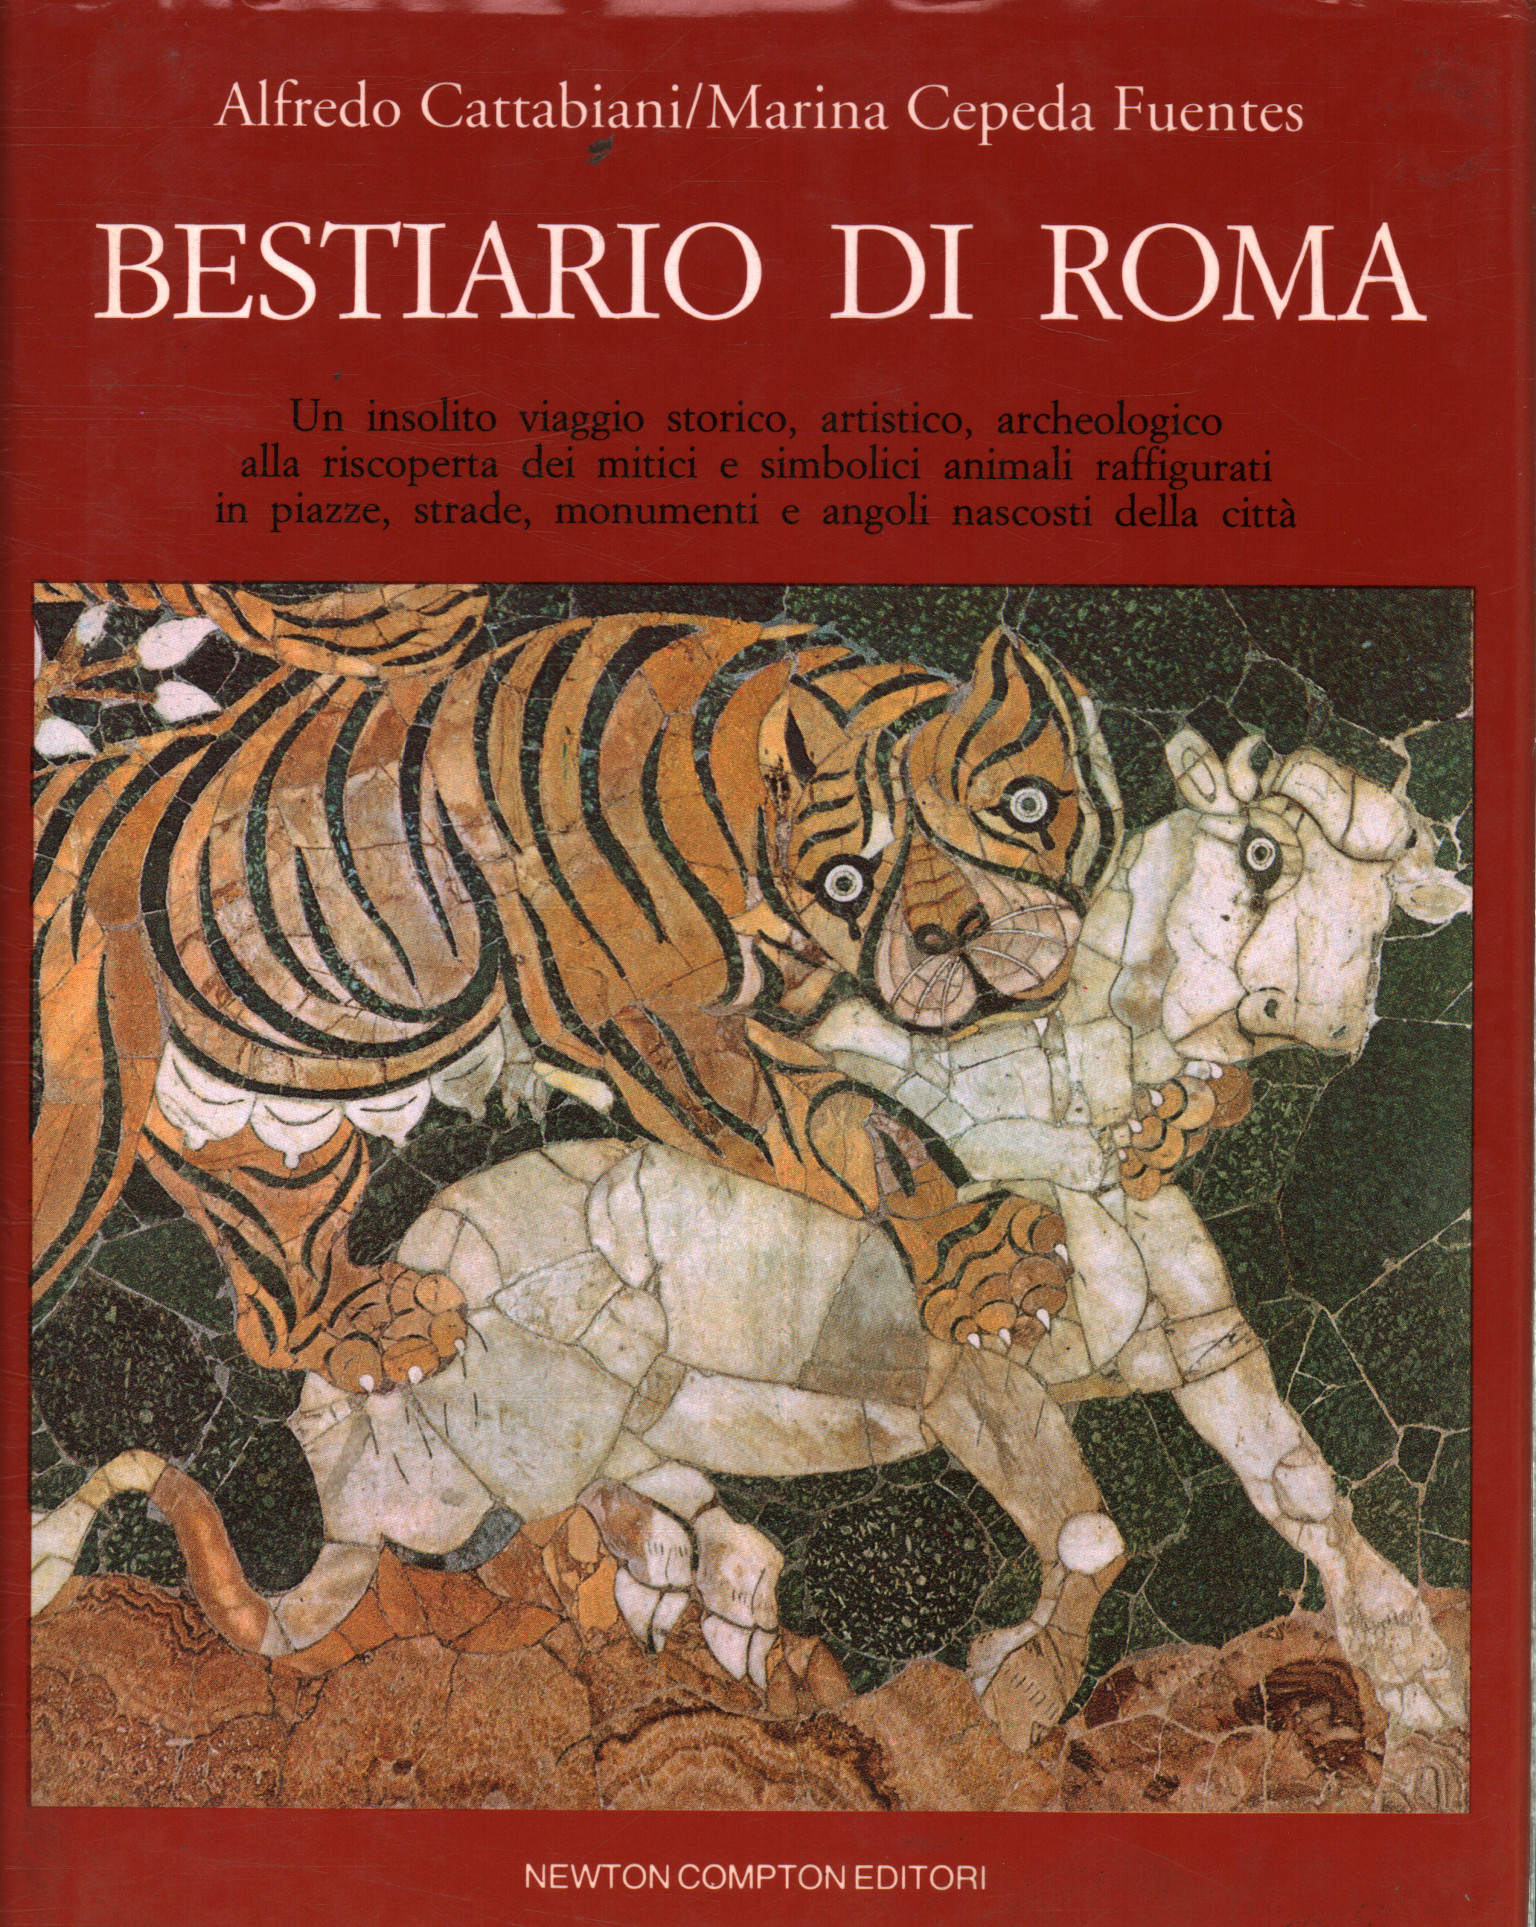 Bestiary of Rome